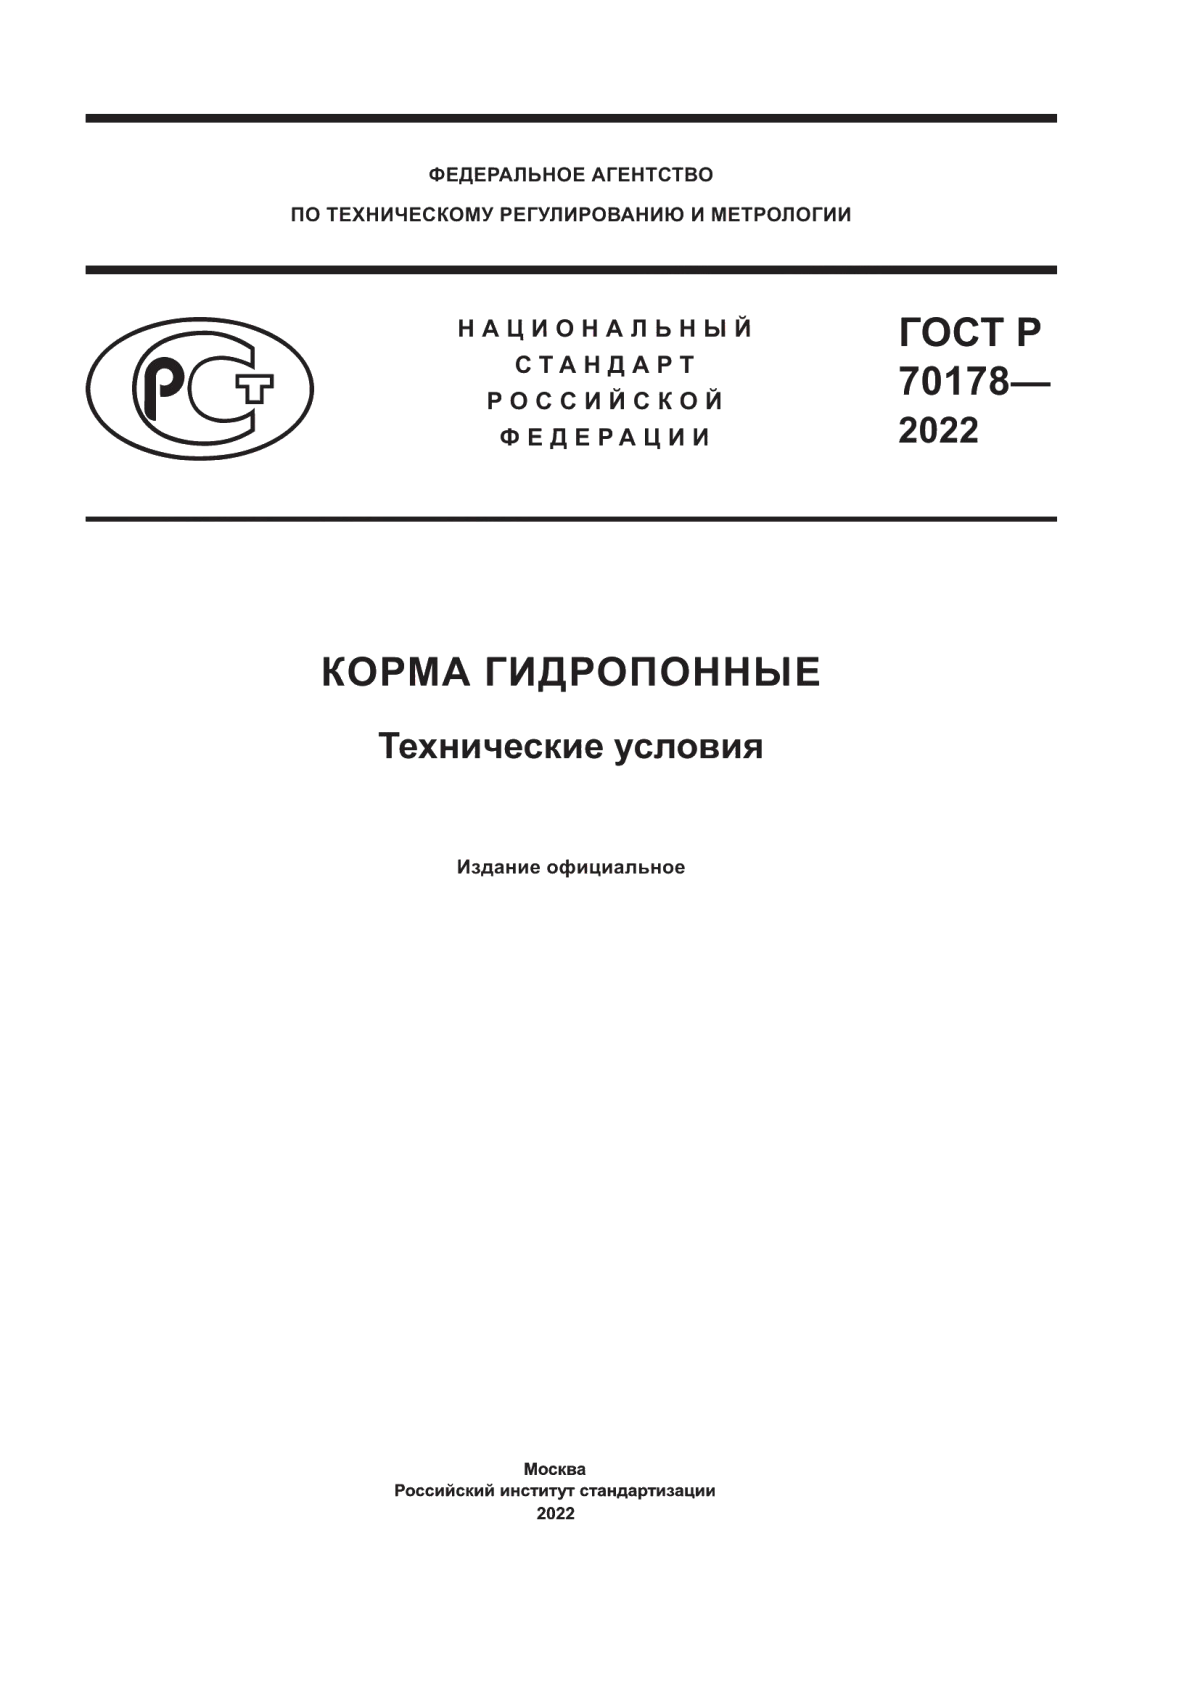 ГОСТ Р 70178-2022 Корма гидропонные. Технические условия